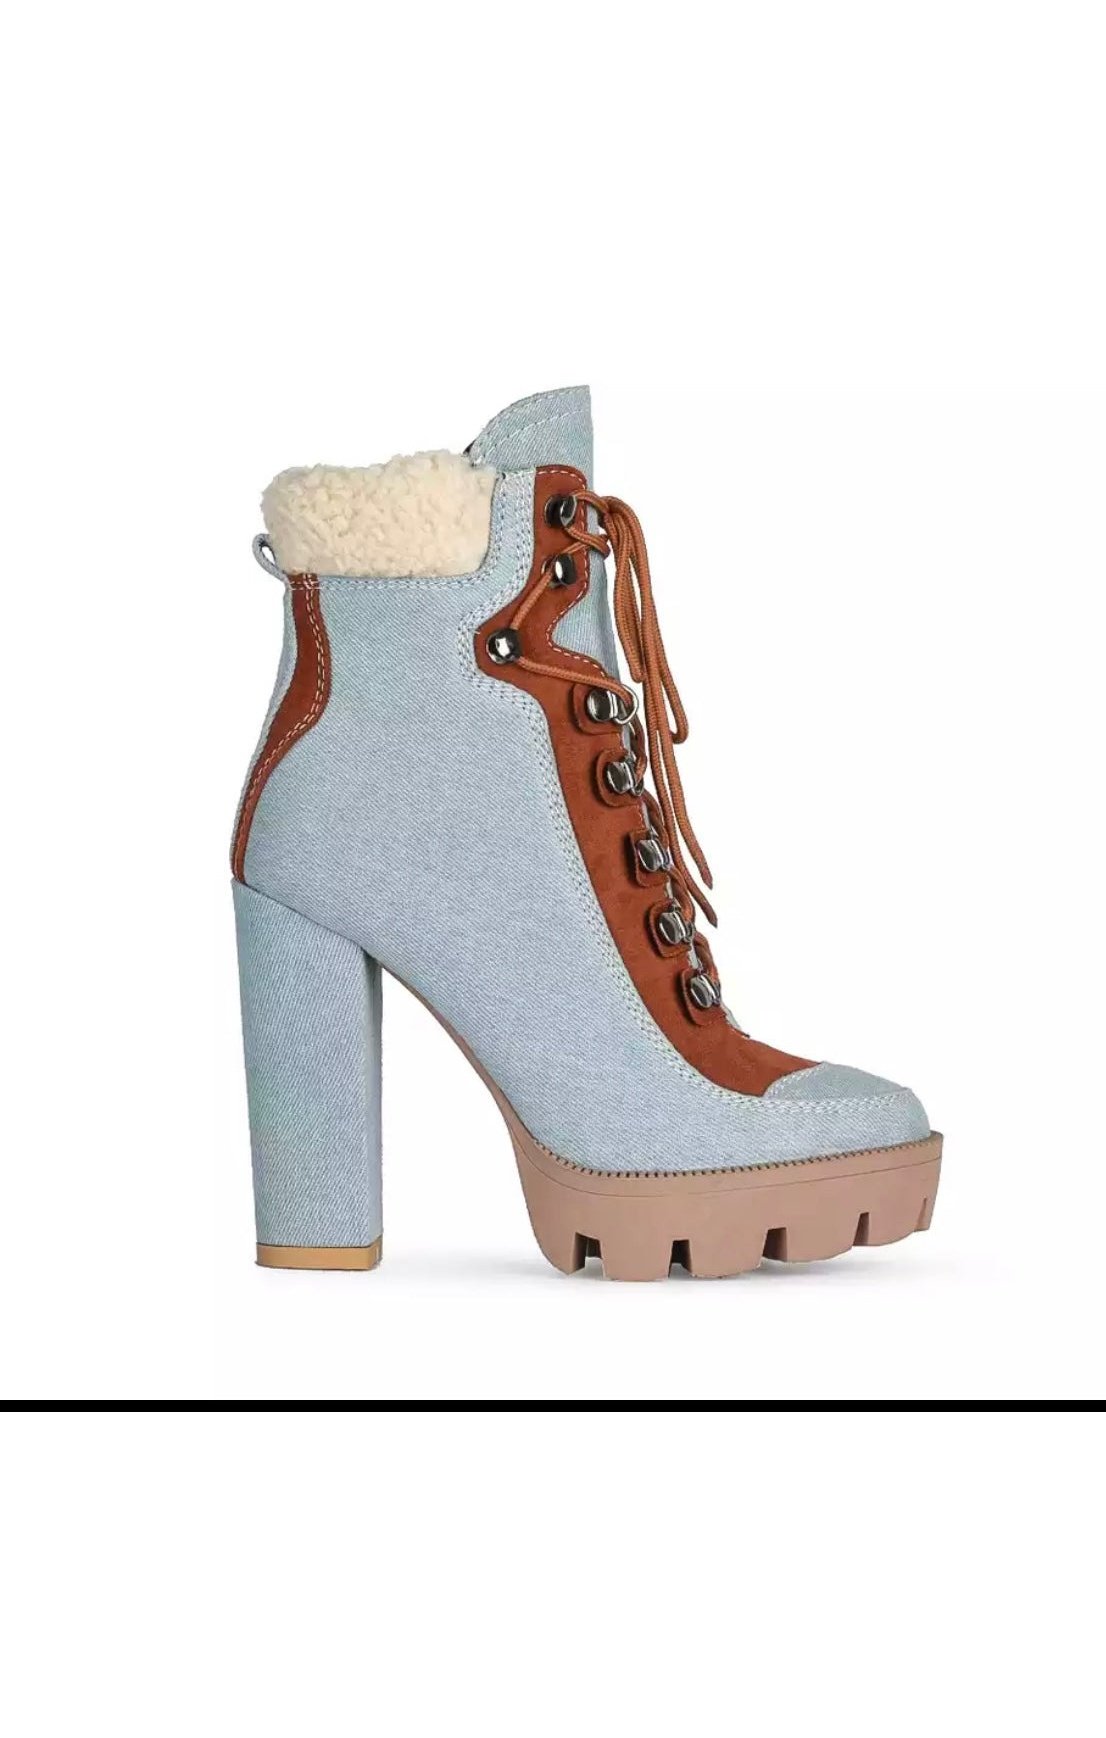 12cm Thick Heel Platform Lace Up Boots (3 Colors )